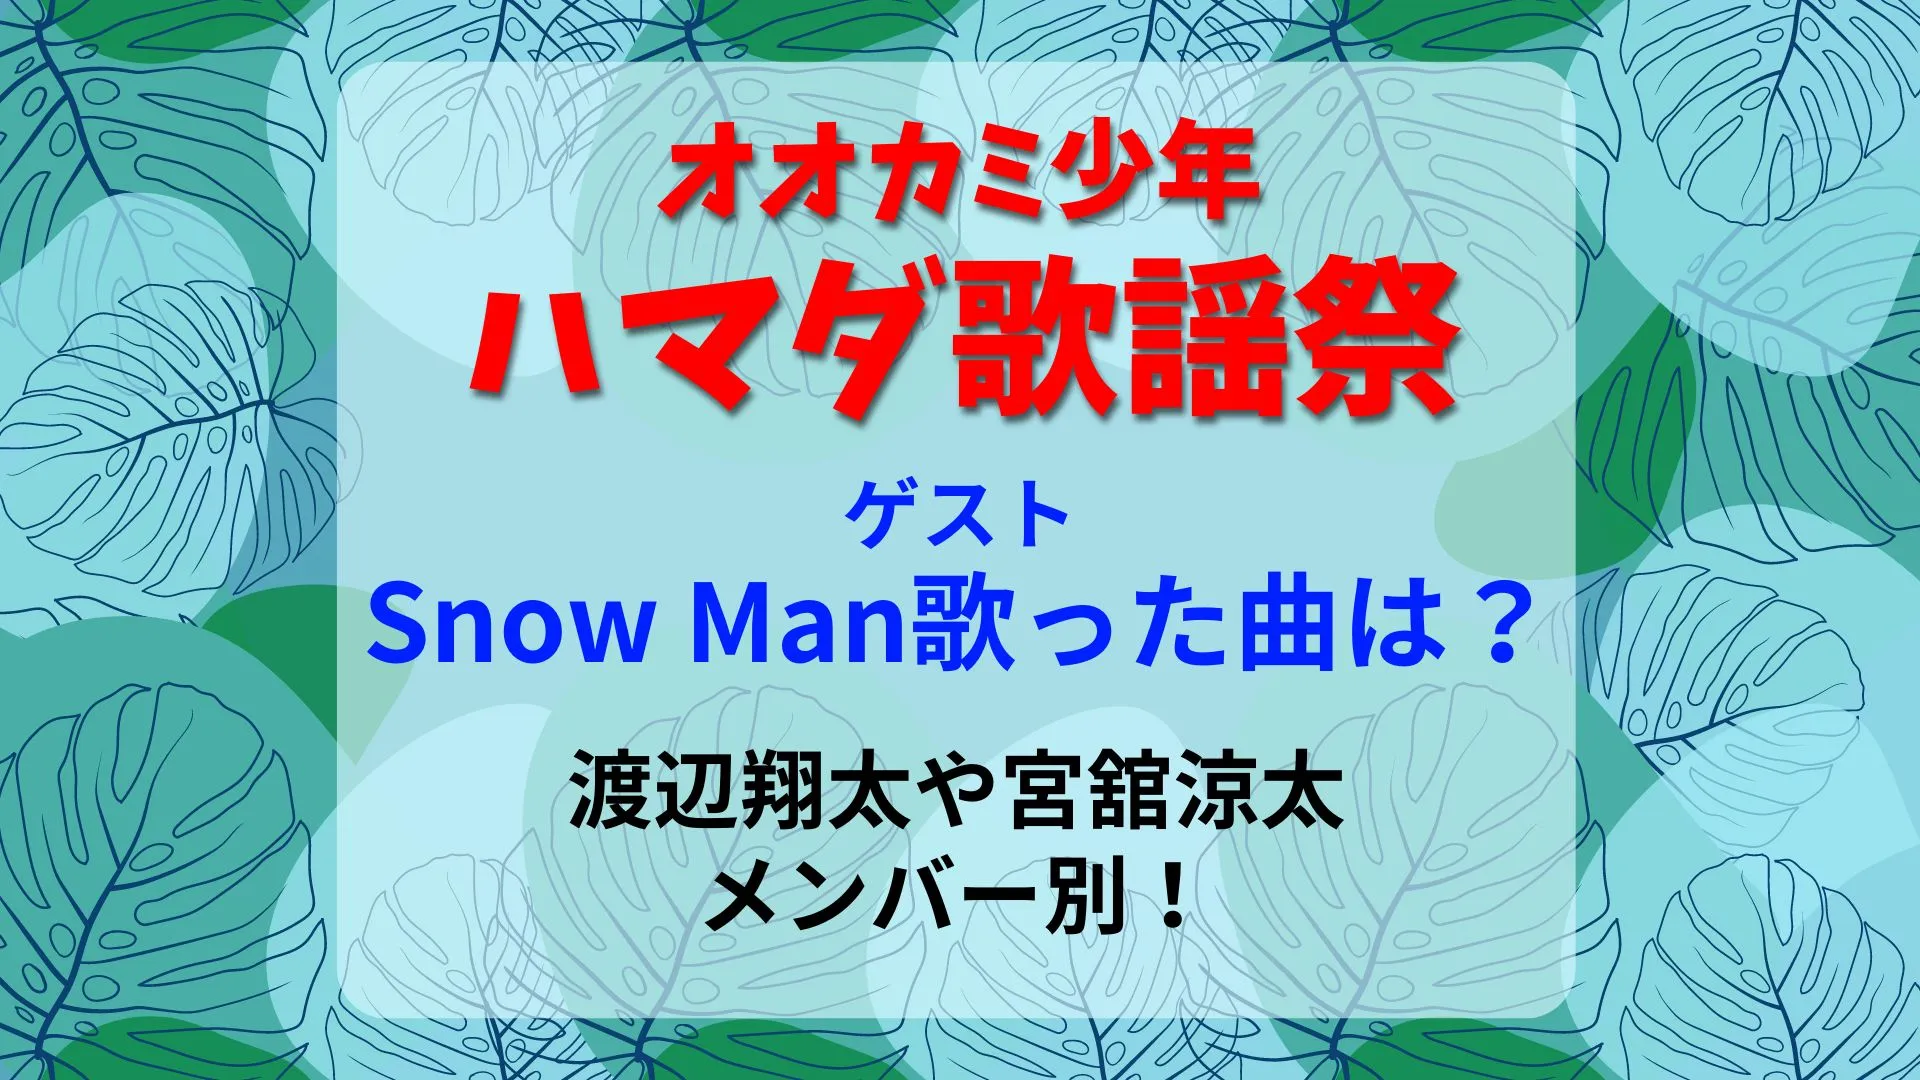 ハマダ歌謡祭Snow Man渡辺翔太宮舘涼太が歌った曲